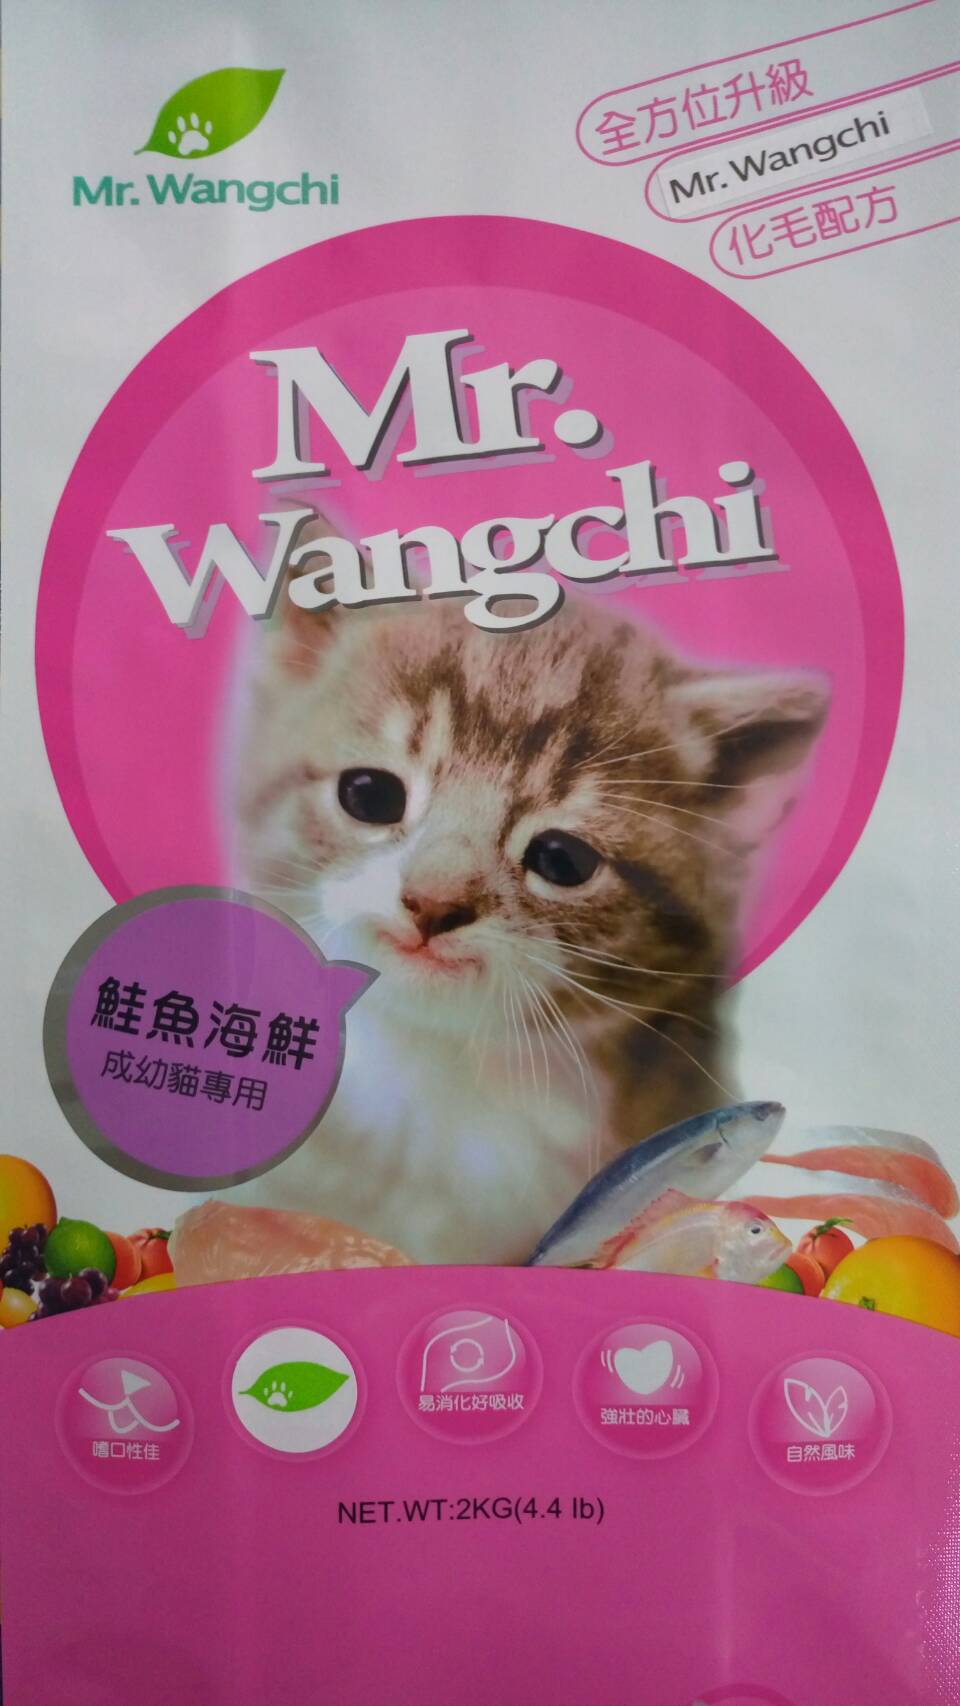 旺奇先生:鮭魚海鮮成幼貓專用
Mr.Wangchi